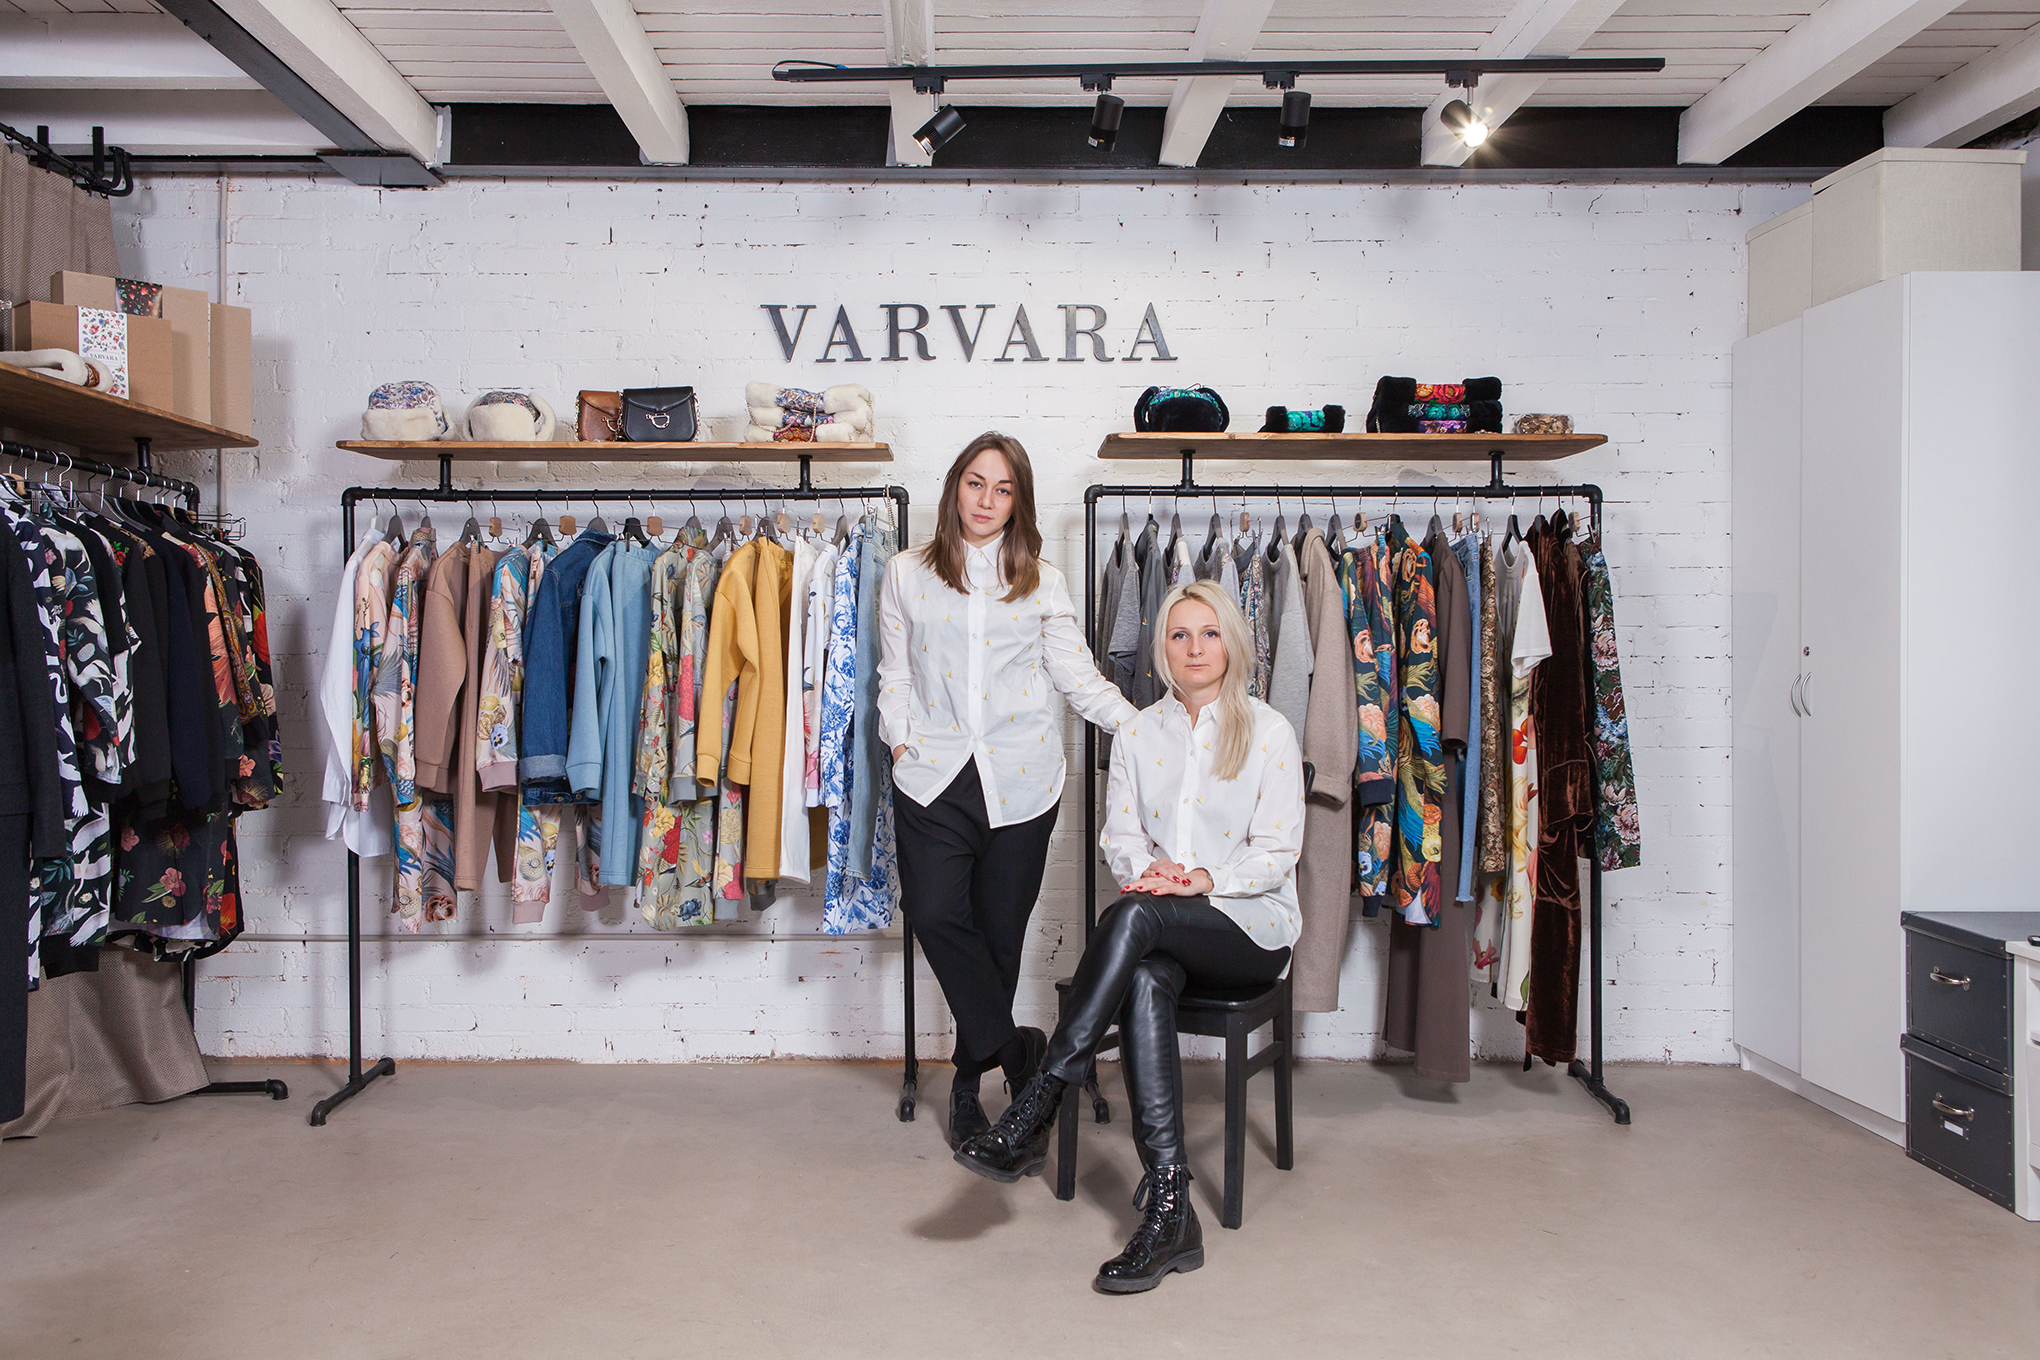 Varvara: Как из «сувенирного» стартапа вырос бренд женской одежды в русском стиле